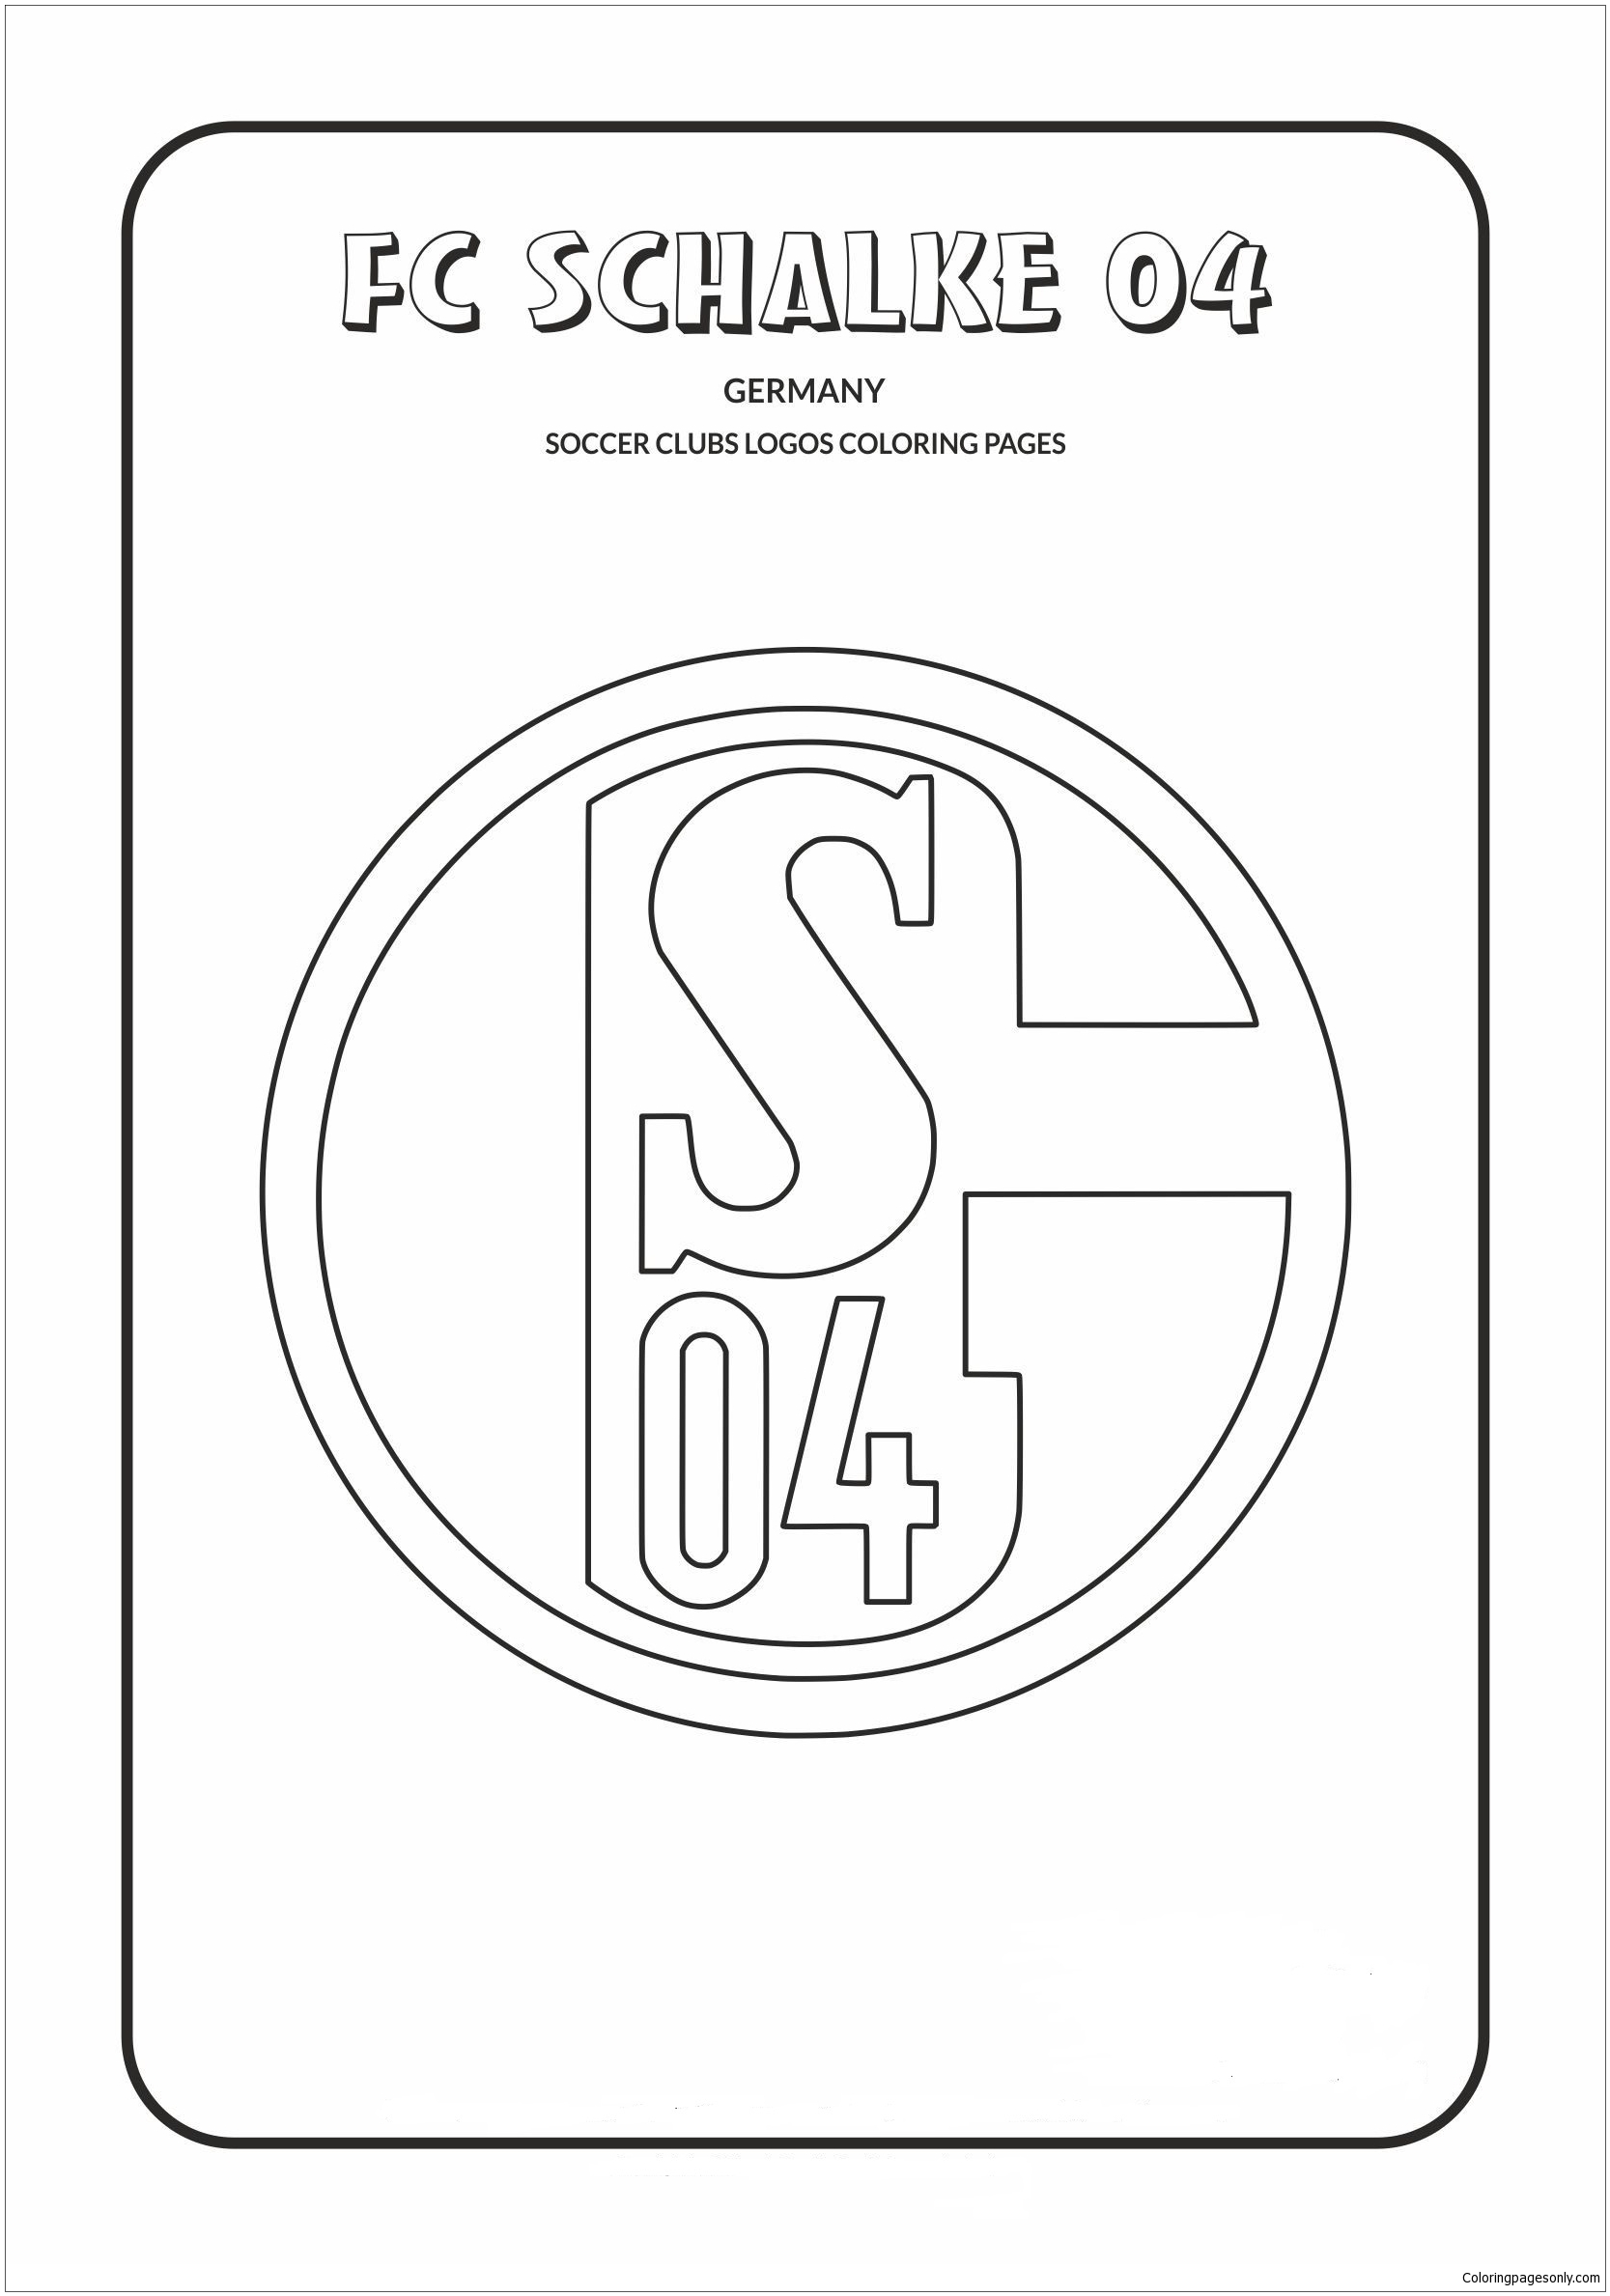 FC Schalke 04 من شعارات فريق الدوري الألماني